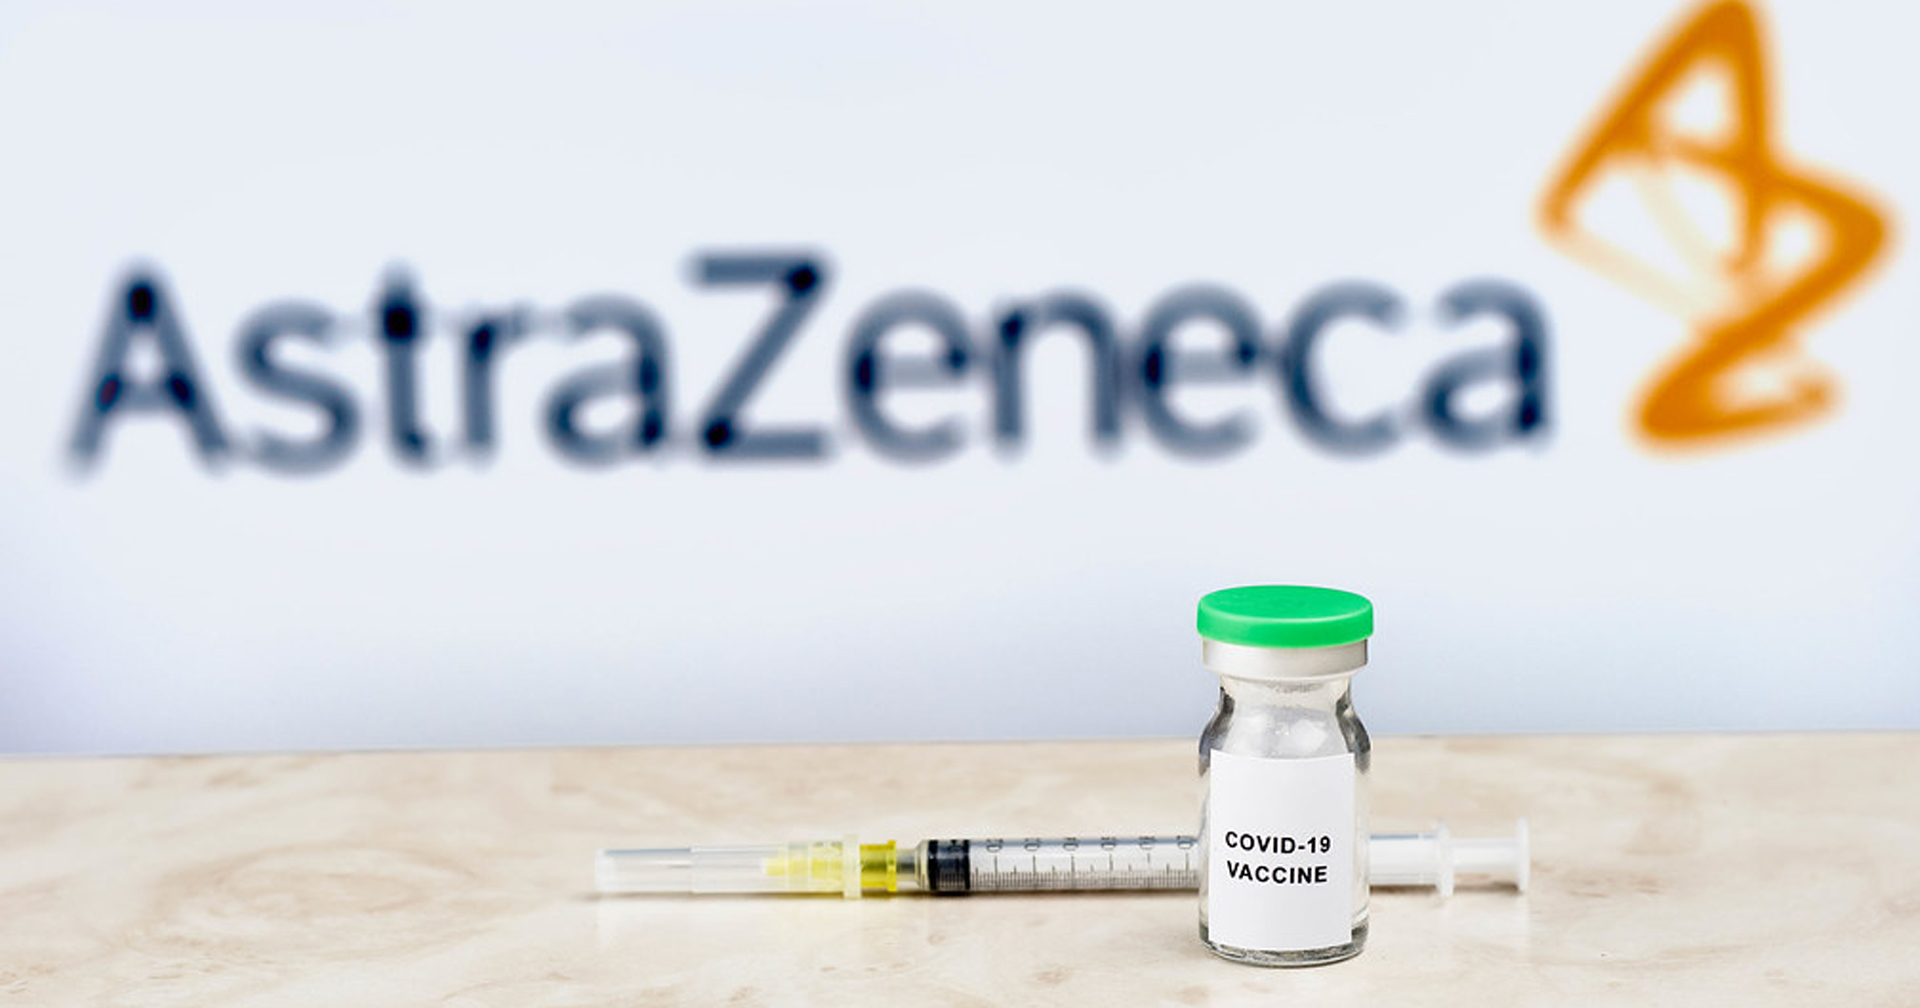 นักวิทย์เผย พบความเชื่อมโยงวัคซีน ‘AstraZeneca’ ทำให้เกิดโรคลิ่มเลือดแข็งตัว